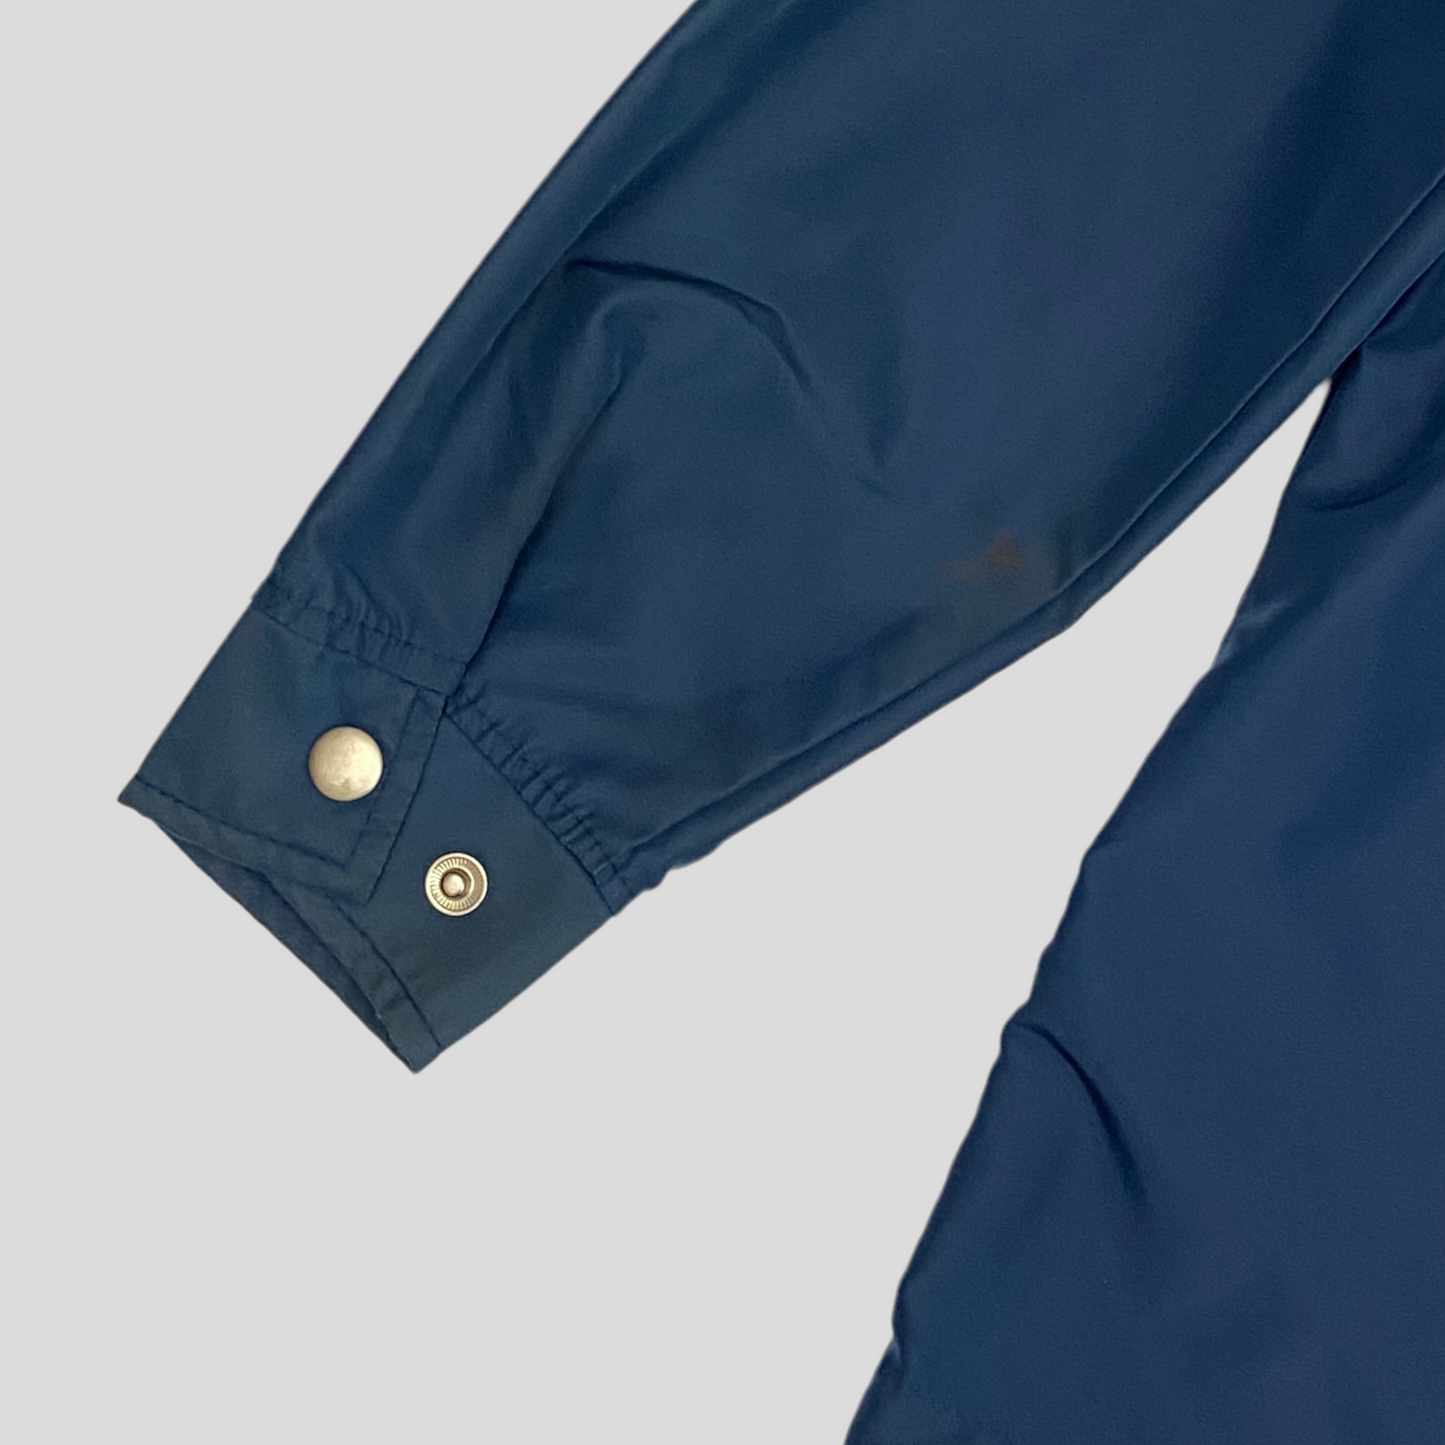 Stussy 90’s Nylon Shimmer Jacket - L (XL)